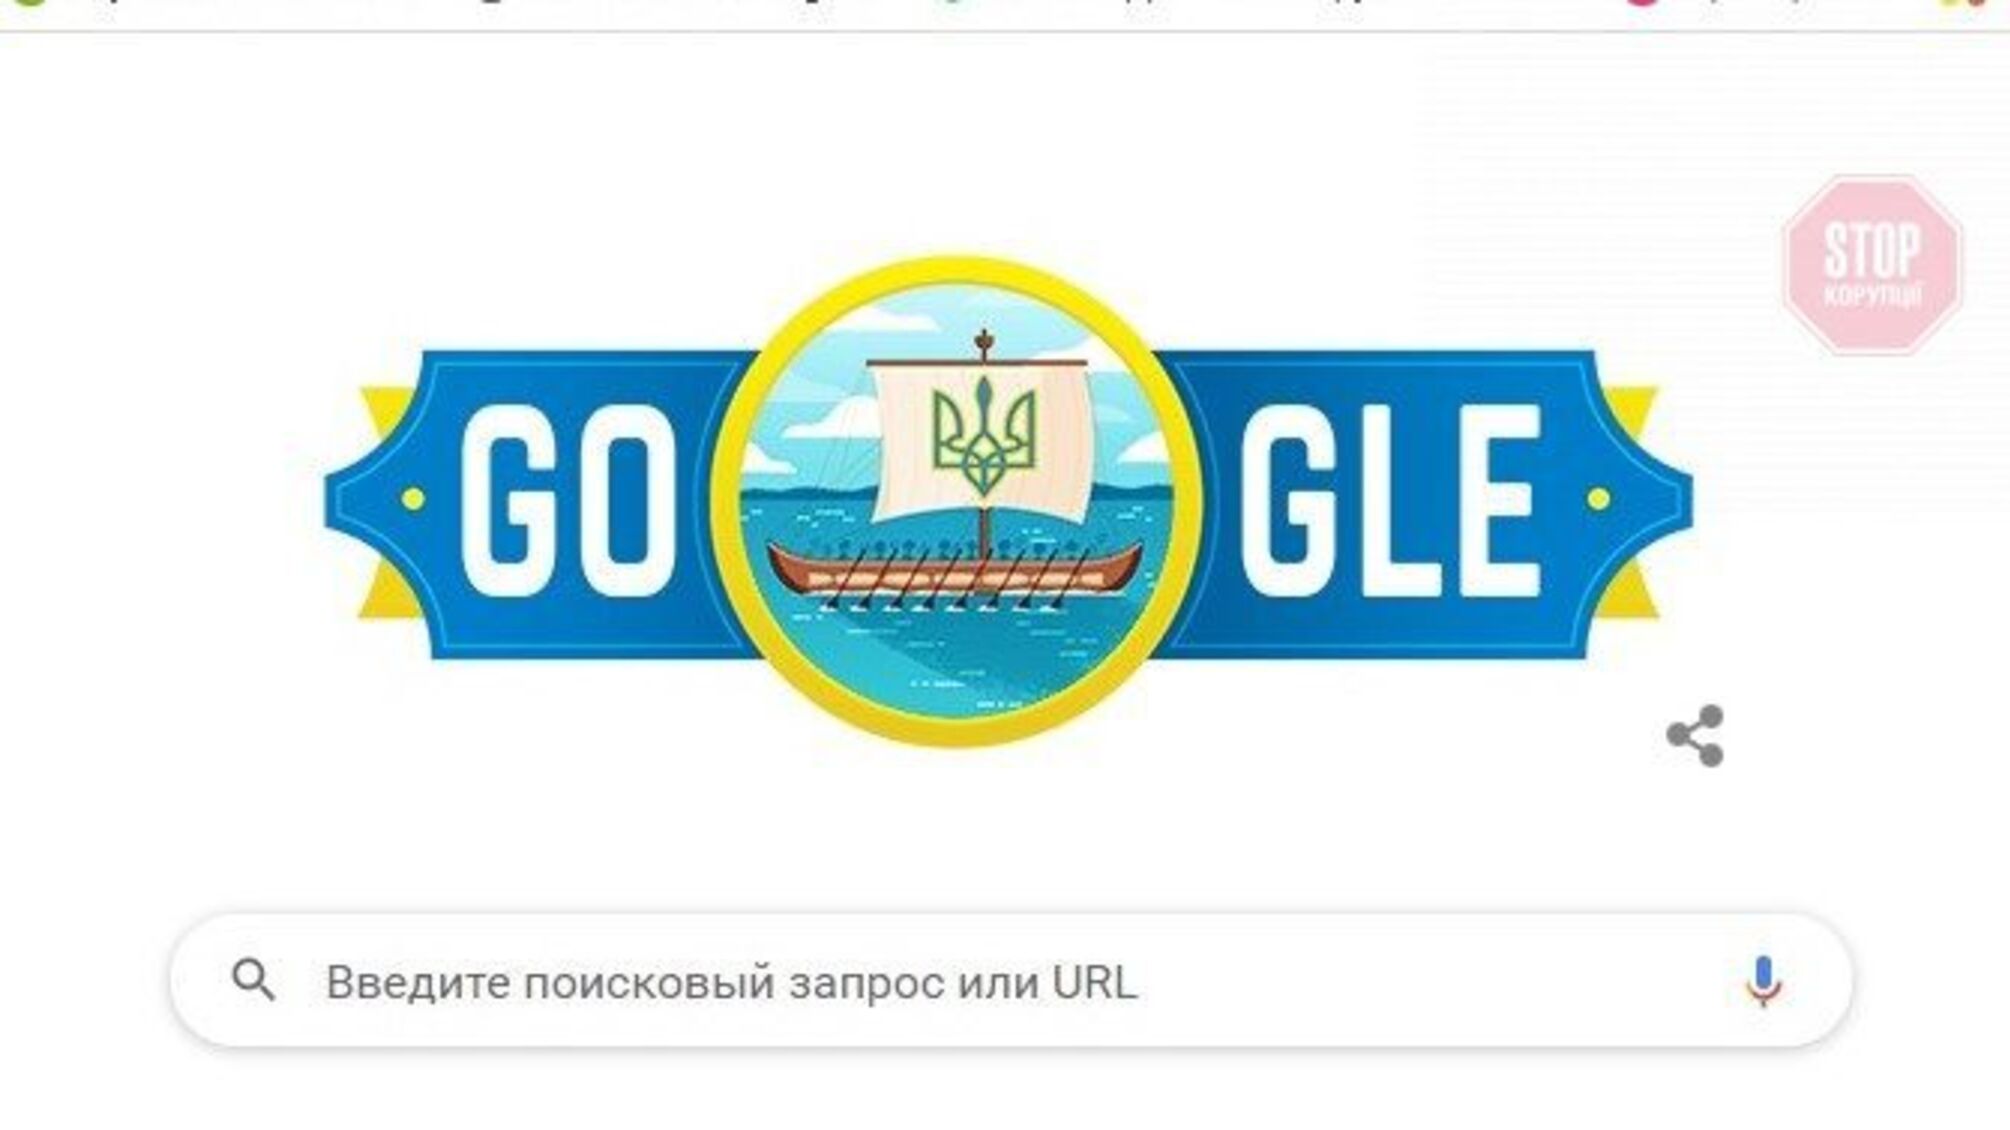 Новый дудл от 'Google' с трезубом и Ниагарский водопад в сине-желтых цветах - мир поздравляет Украину